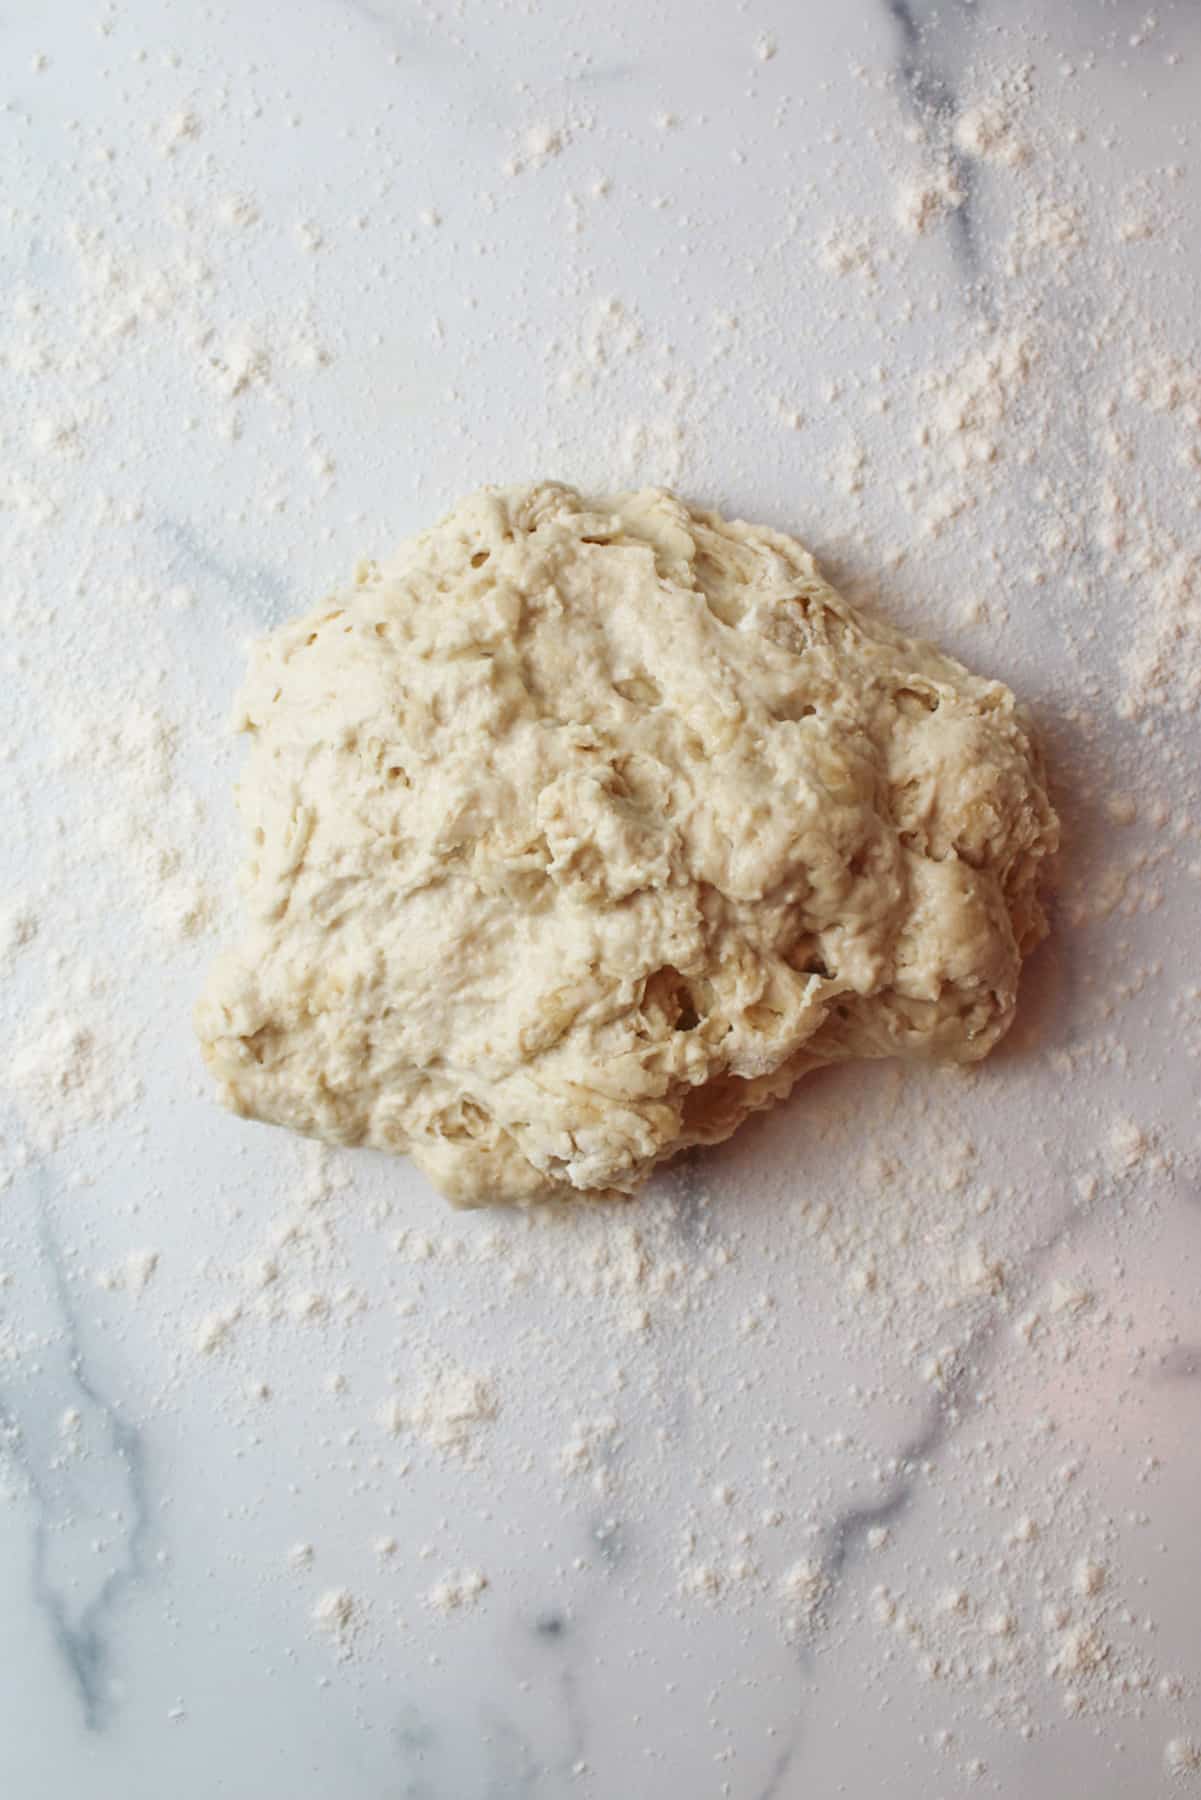 shaggy dough on a floured surface